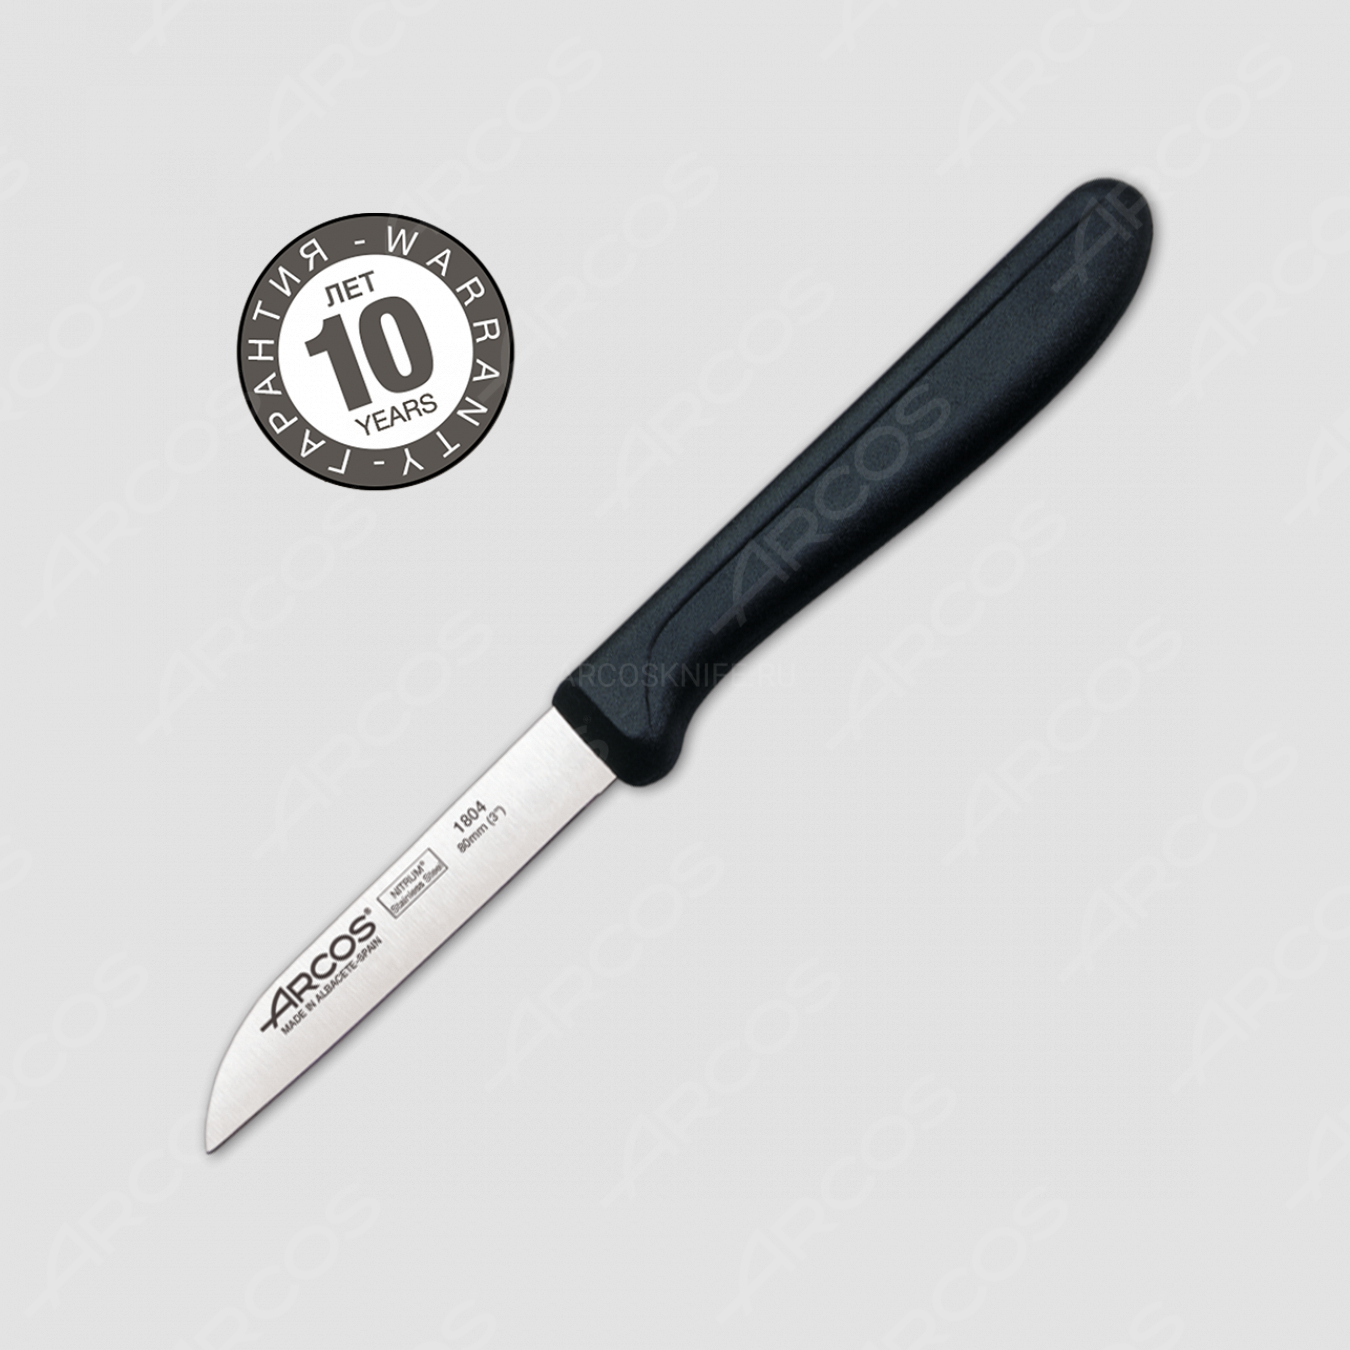 Нож кухонный для чистки 8 см, рукоять черная, серия Genova, ARCOS, Испания